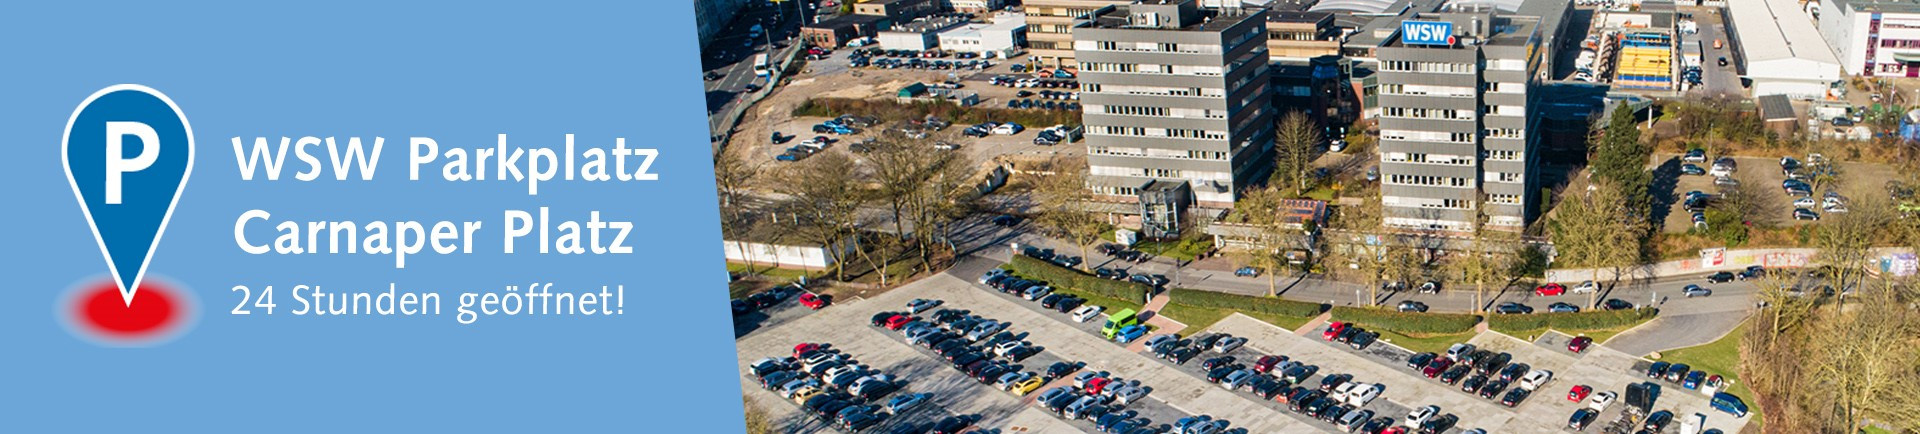 Auf dem WSW Parkplatz Carnaper Platz vor dem WSW-Gebäude parken viele Autos.